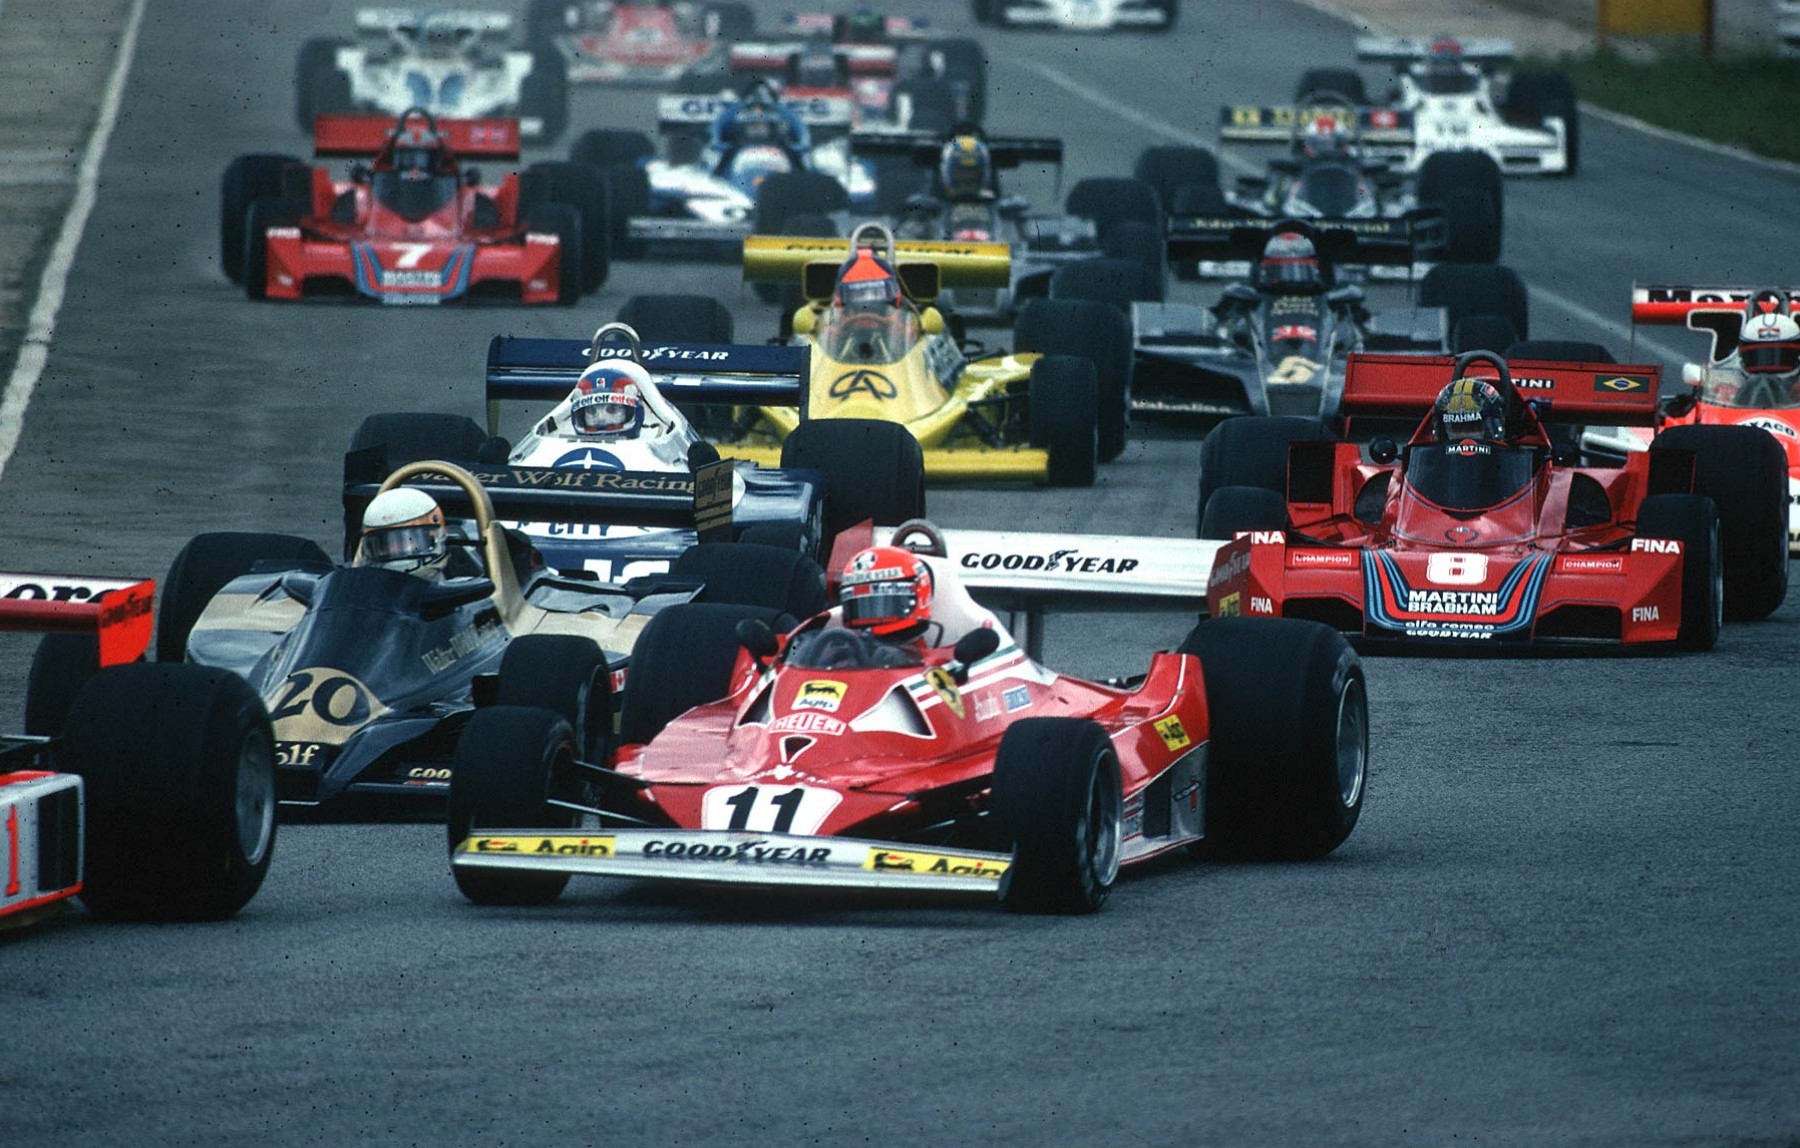 Fromula 1 Niki Lauda